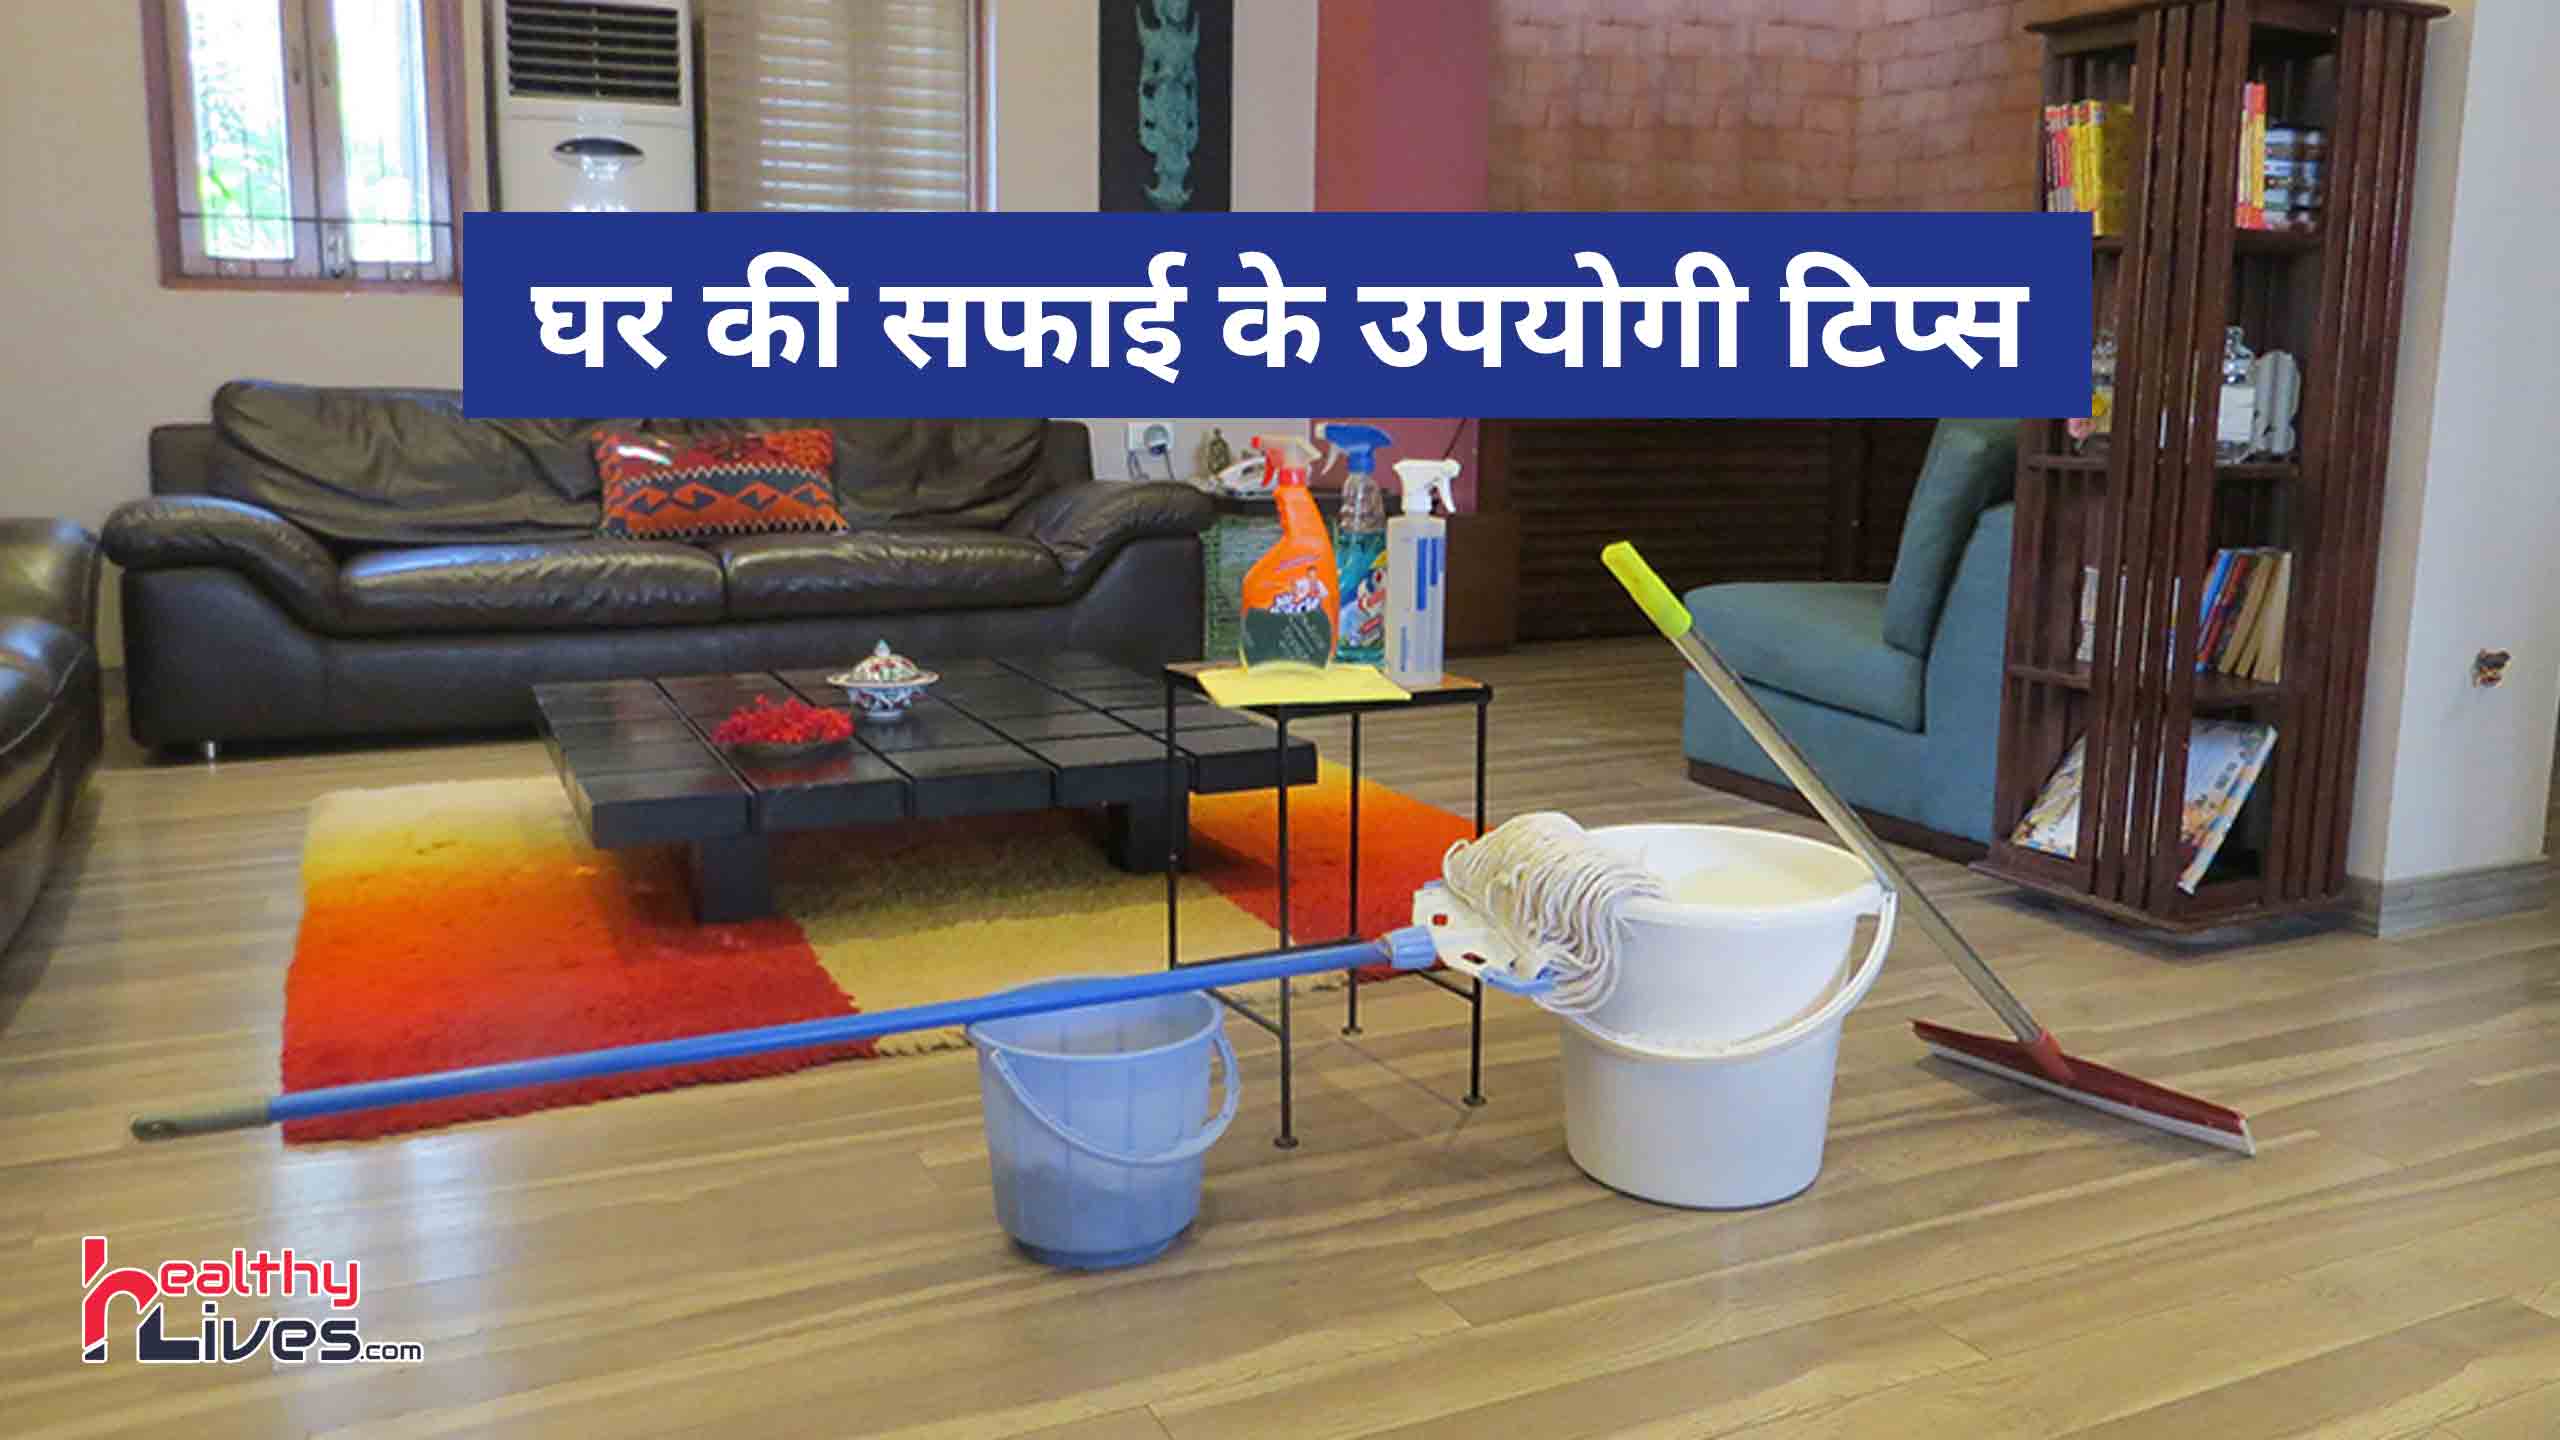 House Cleaning Tips: इन घरेलू टिप्स को अपना कर रखें अपने घर को हमेशा स्वच्छ